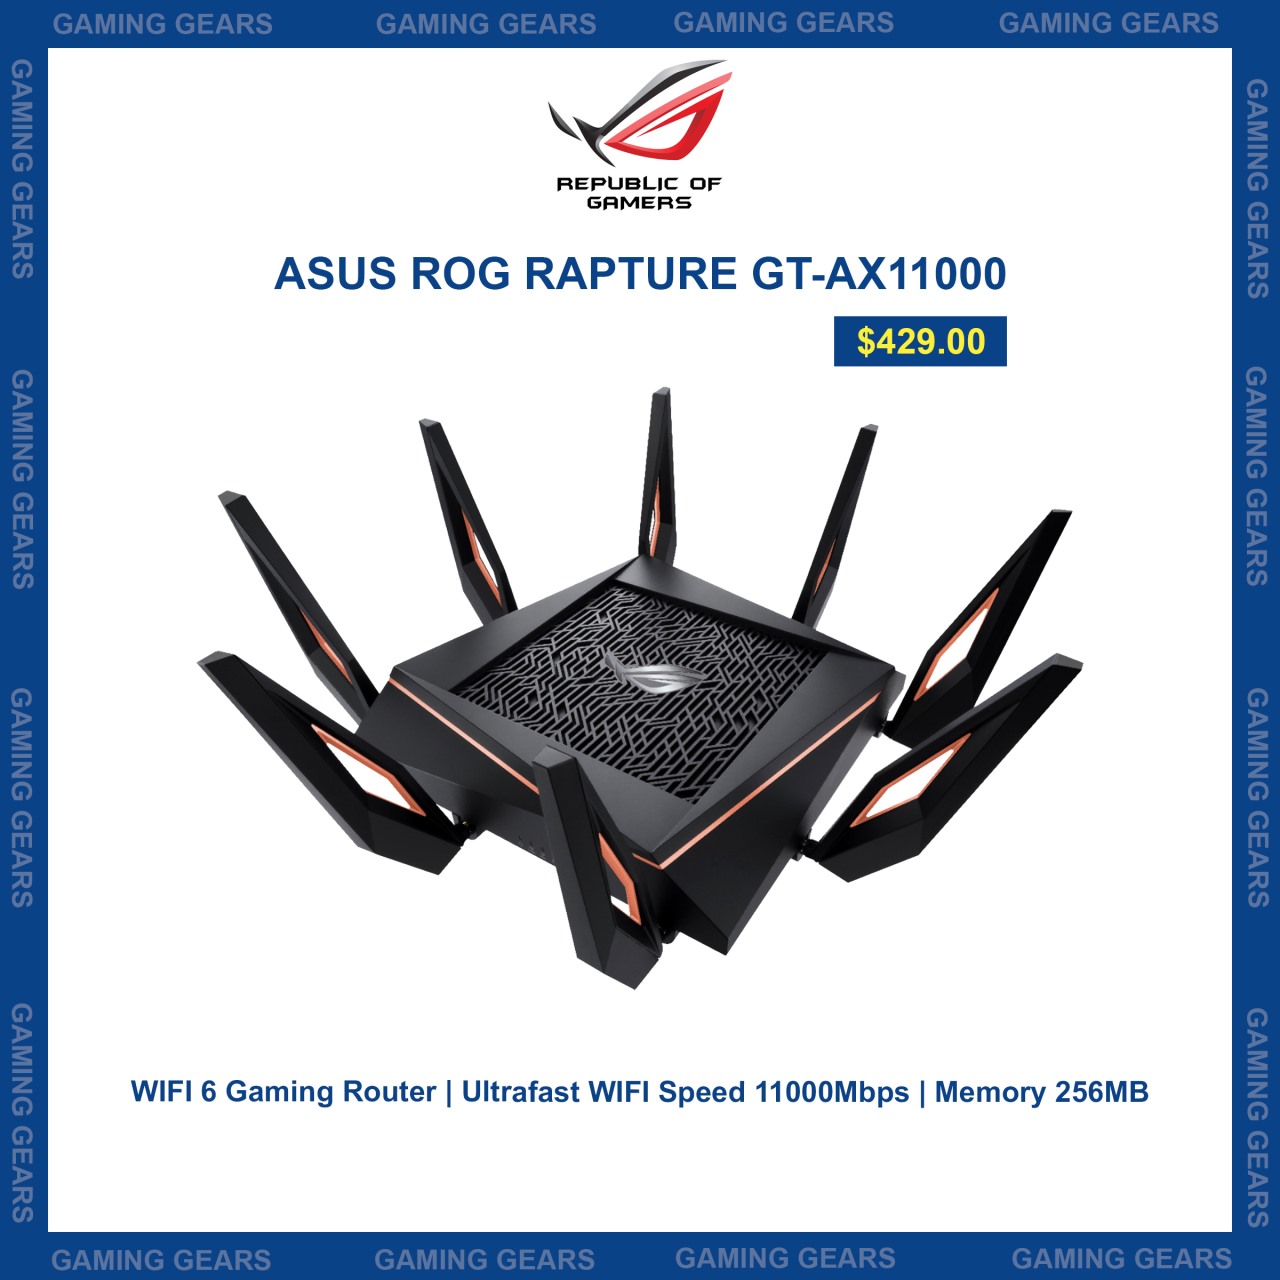 Asus Rog Rapture GT-AX11000